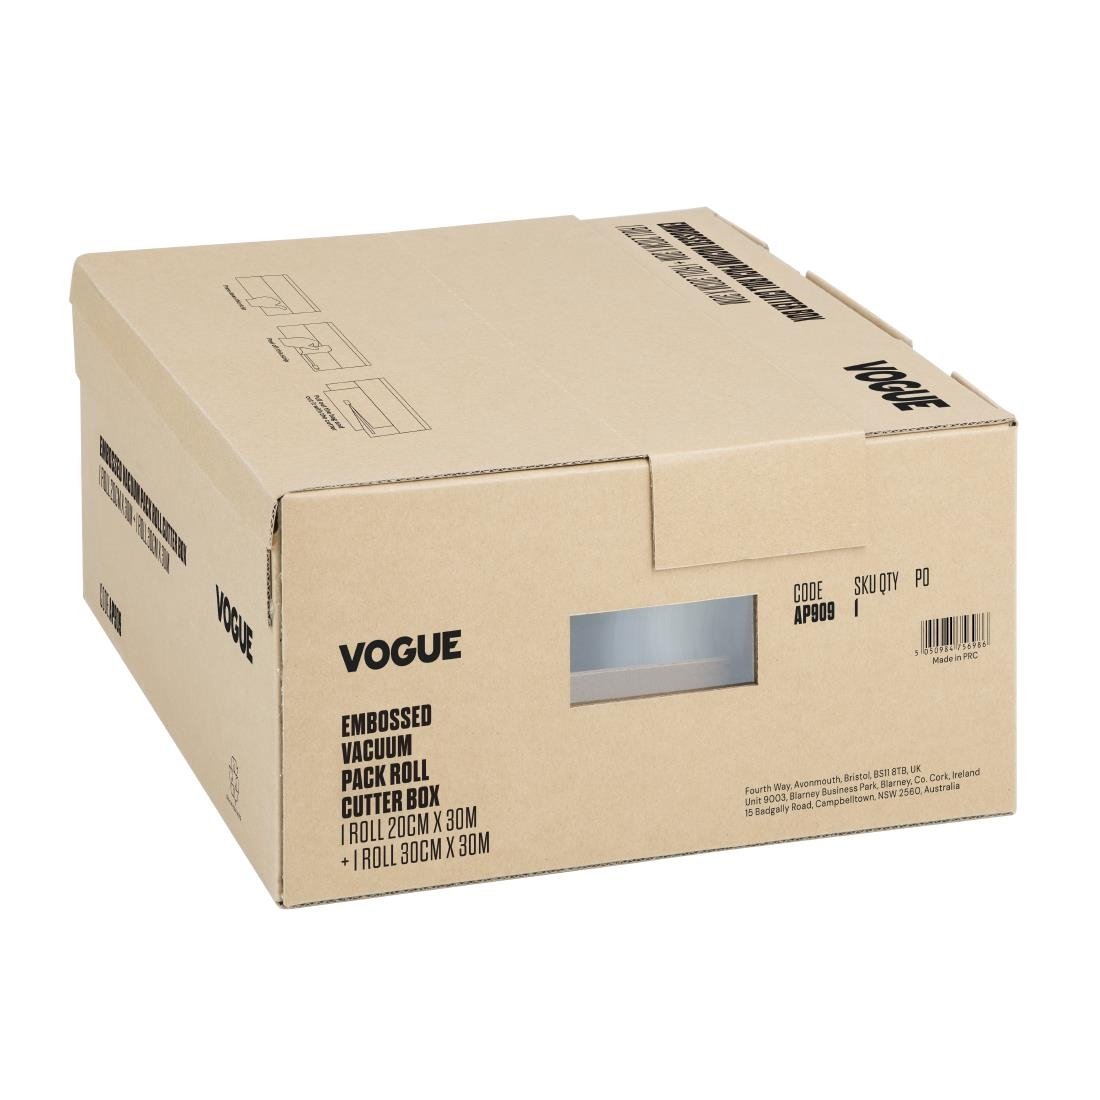 Vogue vacuümverpakkingsrol met snijdoos (reliëf) 200 mm en 300 mm dubbelverpakking